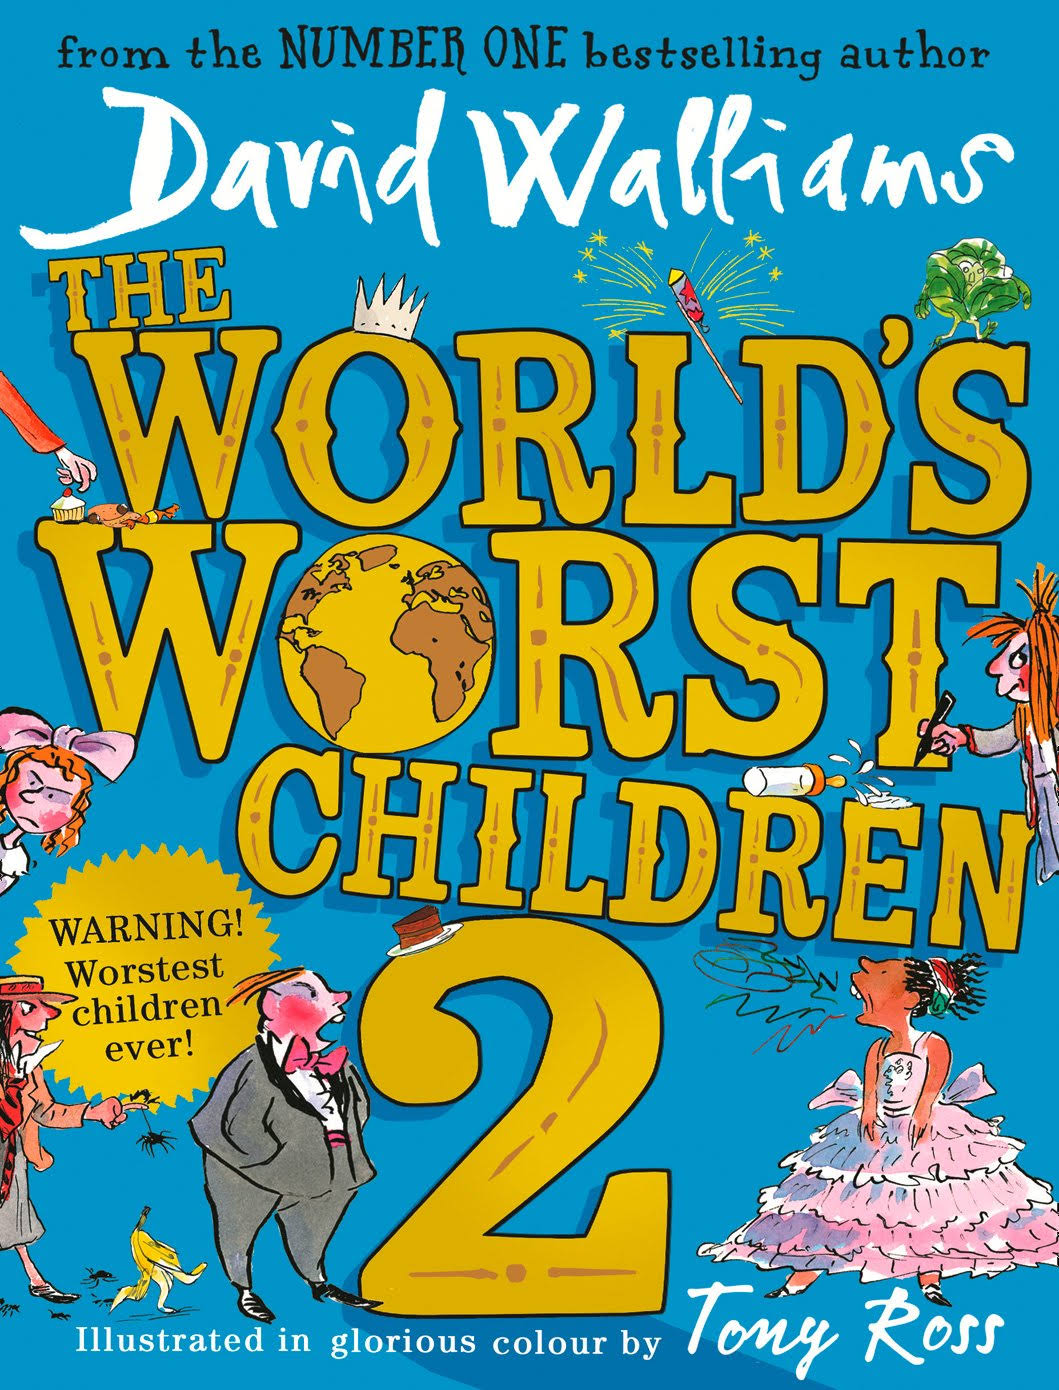 The World's Worst Children 2 - David Walliams